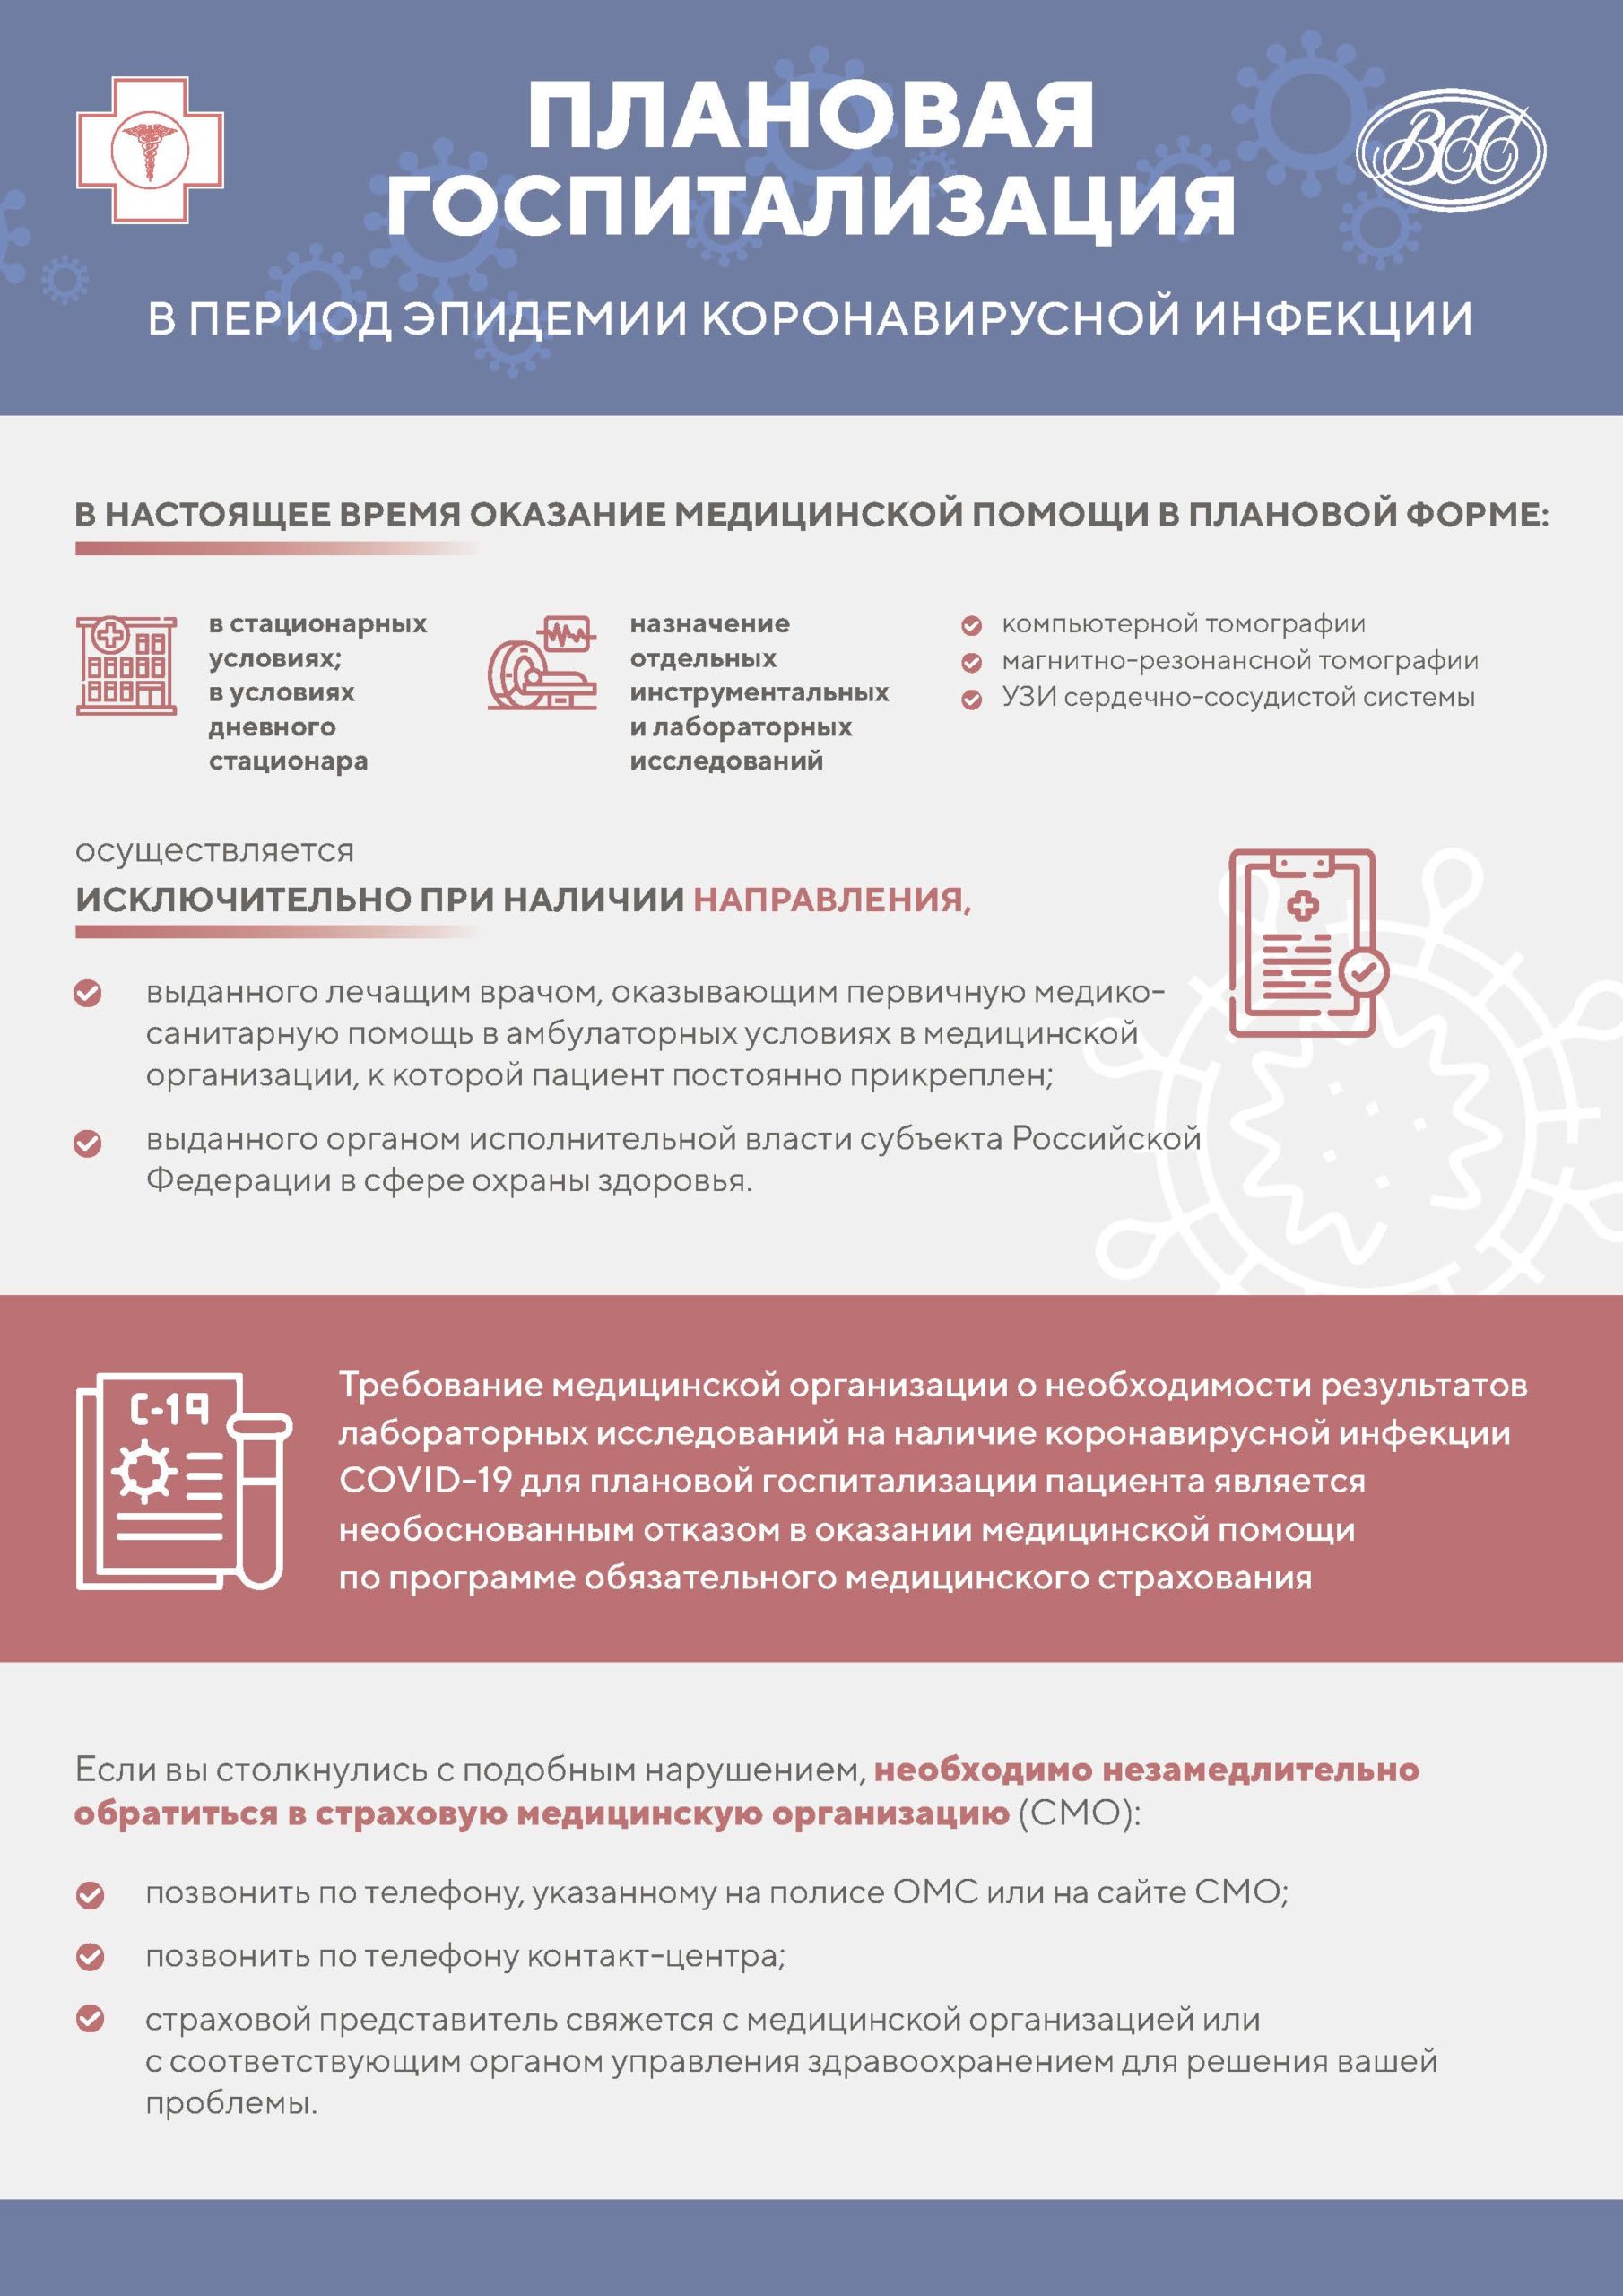 Инфографика_2020_A3_COVID-19-ПЛАНОВАЯ ГОСПИТАЛИЗАЦИЯ -2